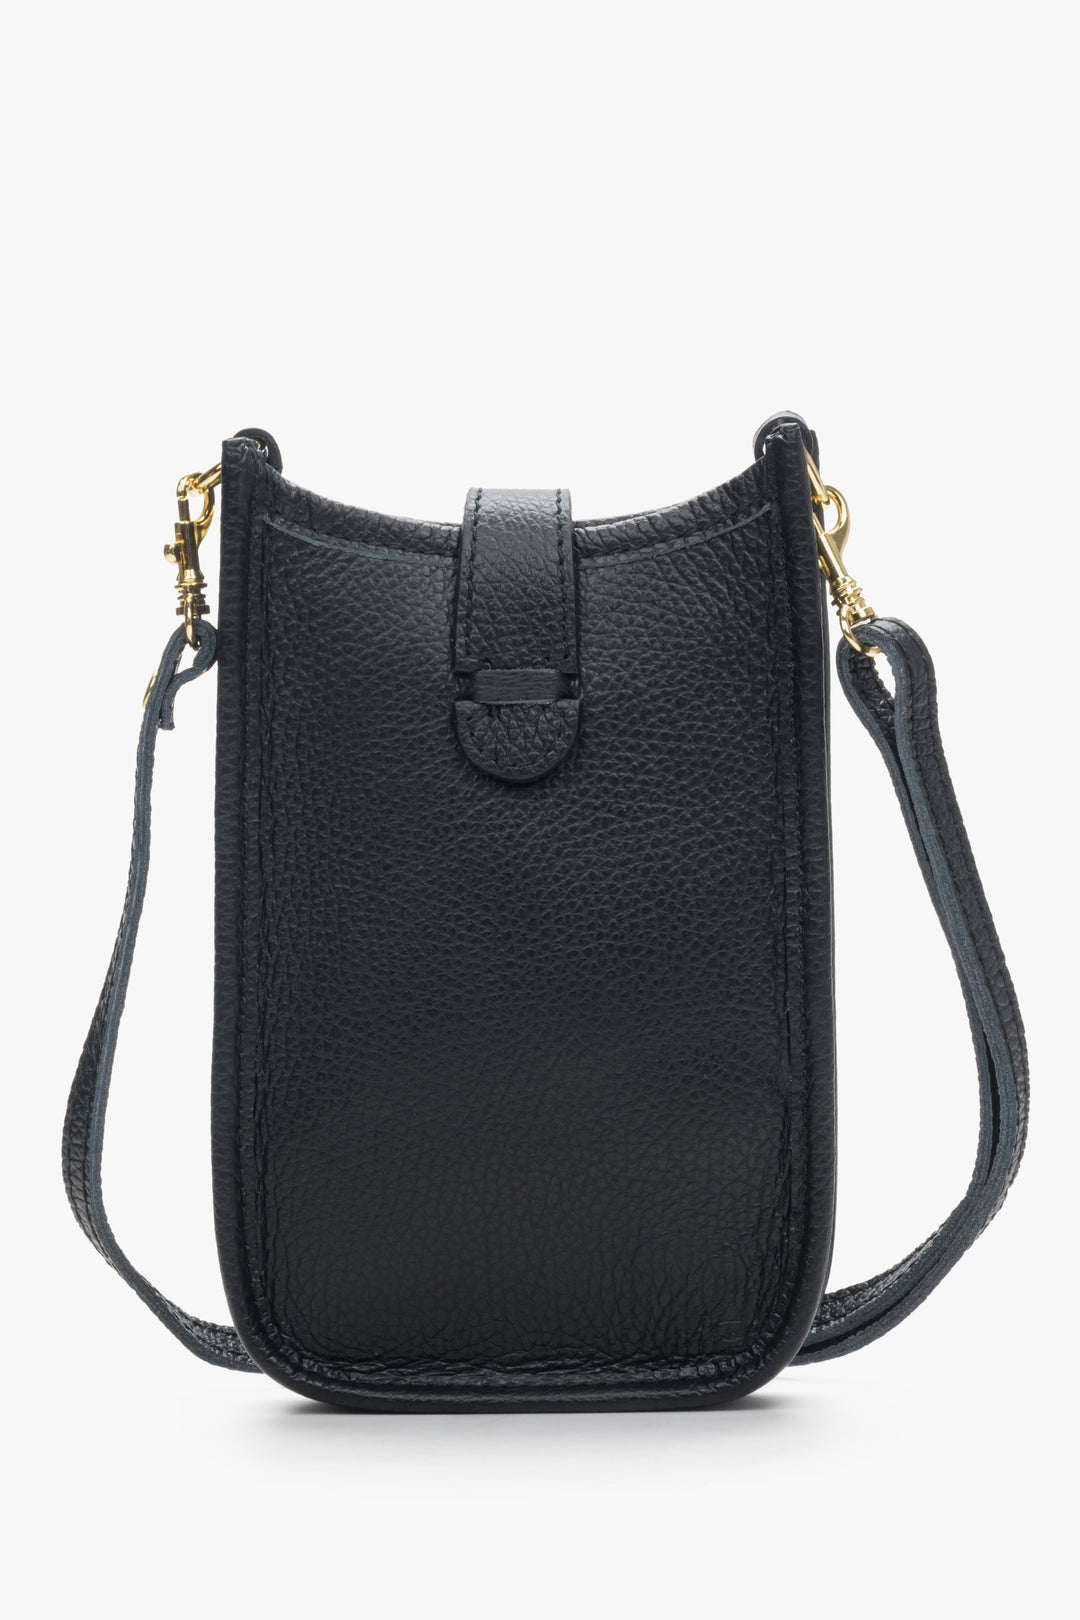 Estro women's black mini handbag.